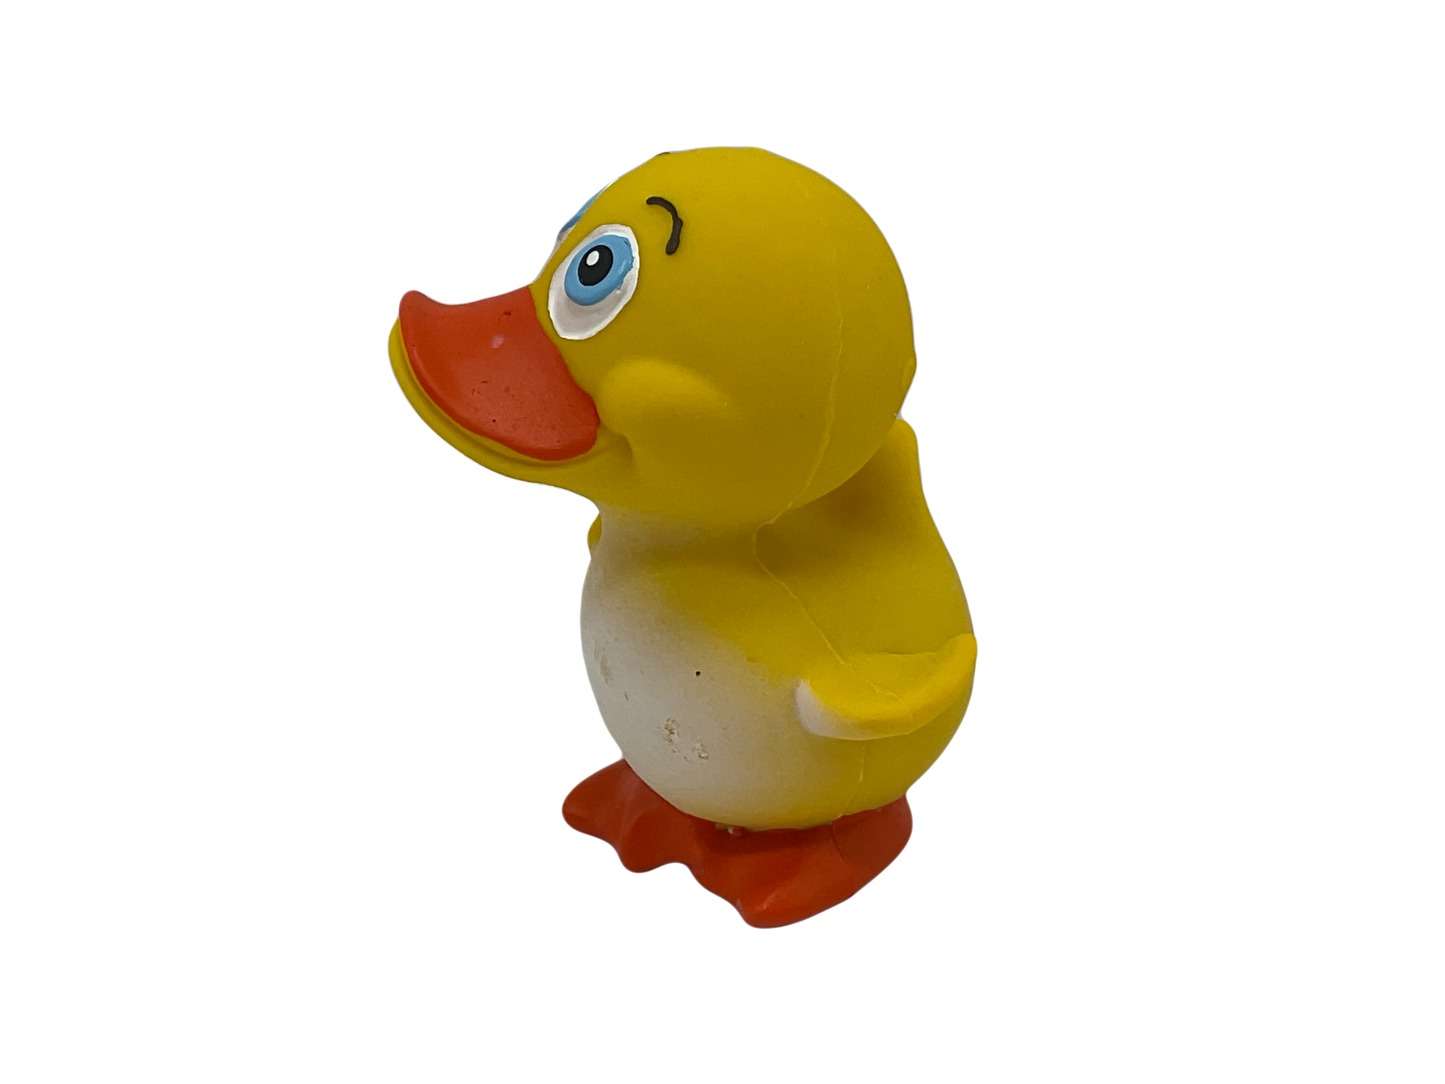 Cute Ducky100 % Natural Rubber Duck